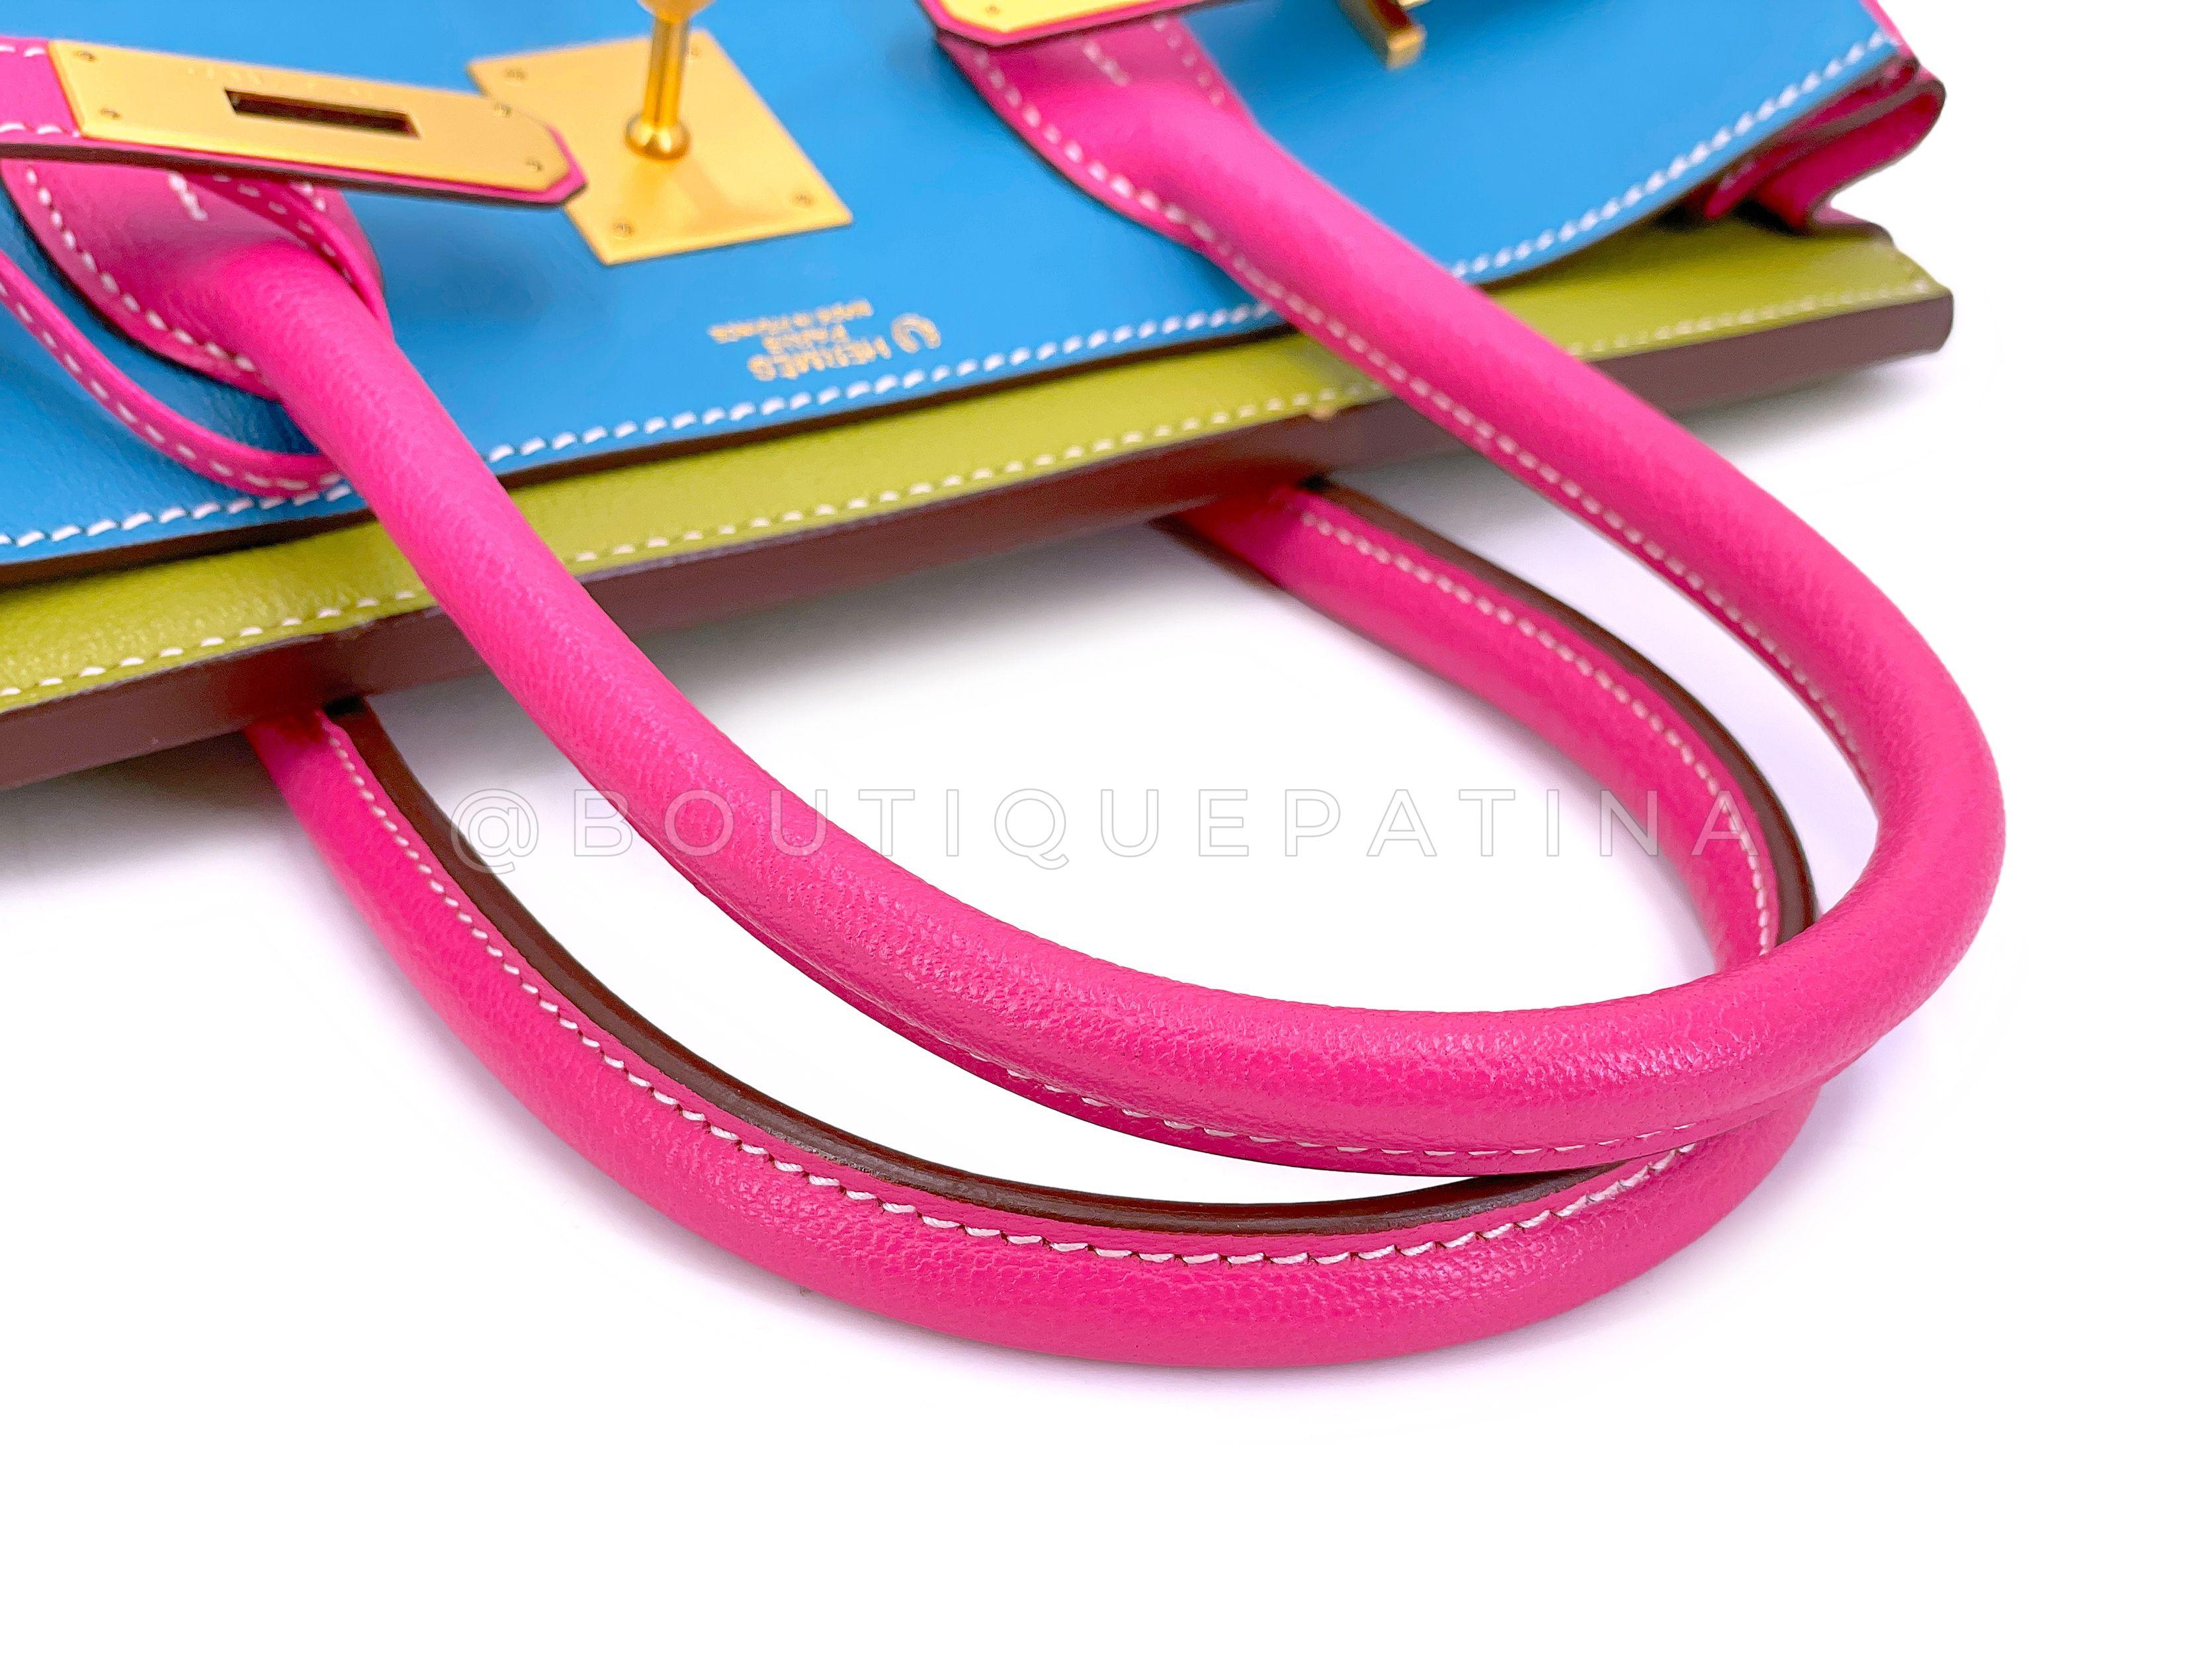 Hermès Special Order Chèvre 30cm Birkin Brushed Gold Pink Green Blue Bag 68121 For Sale 15